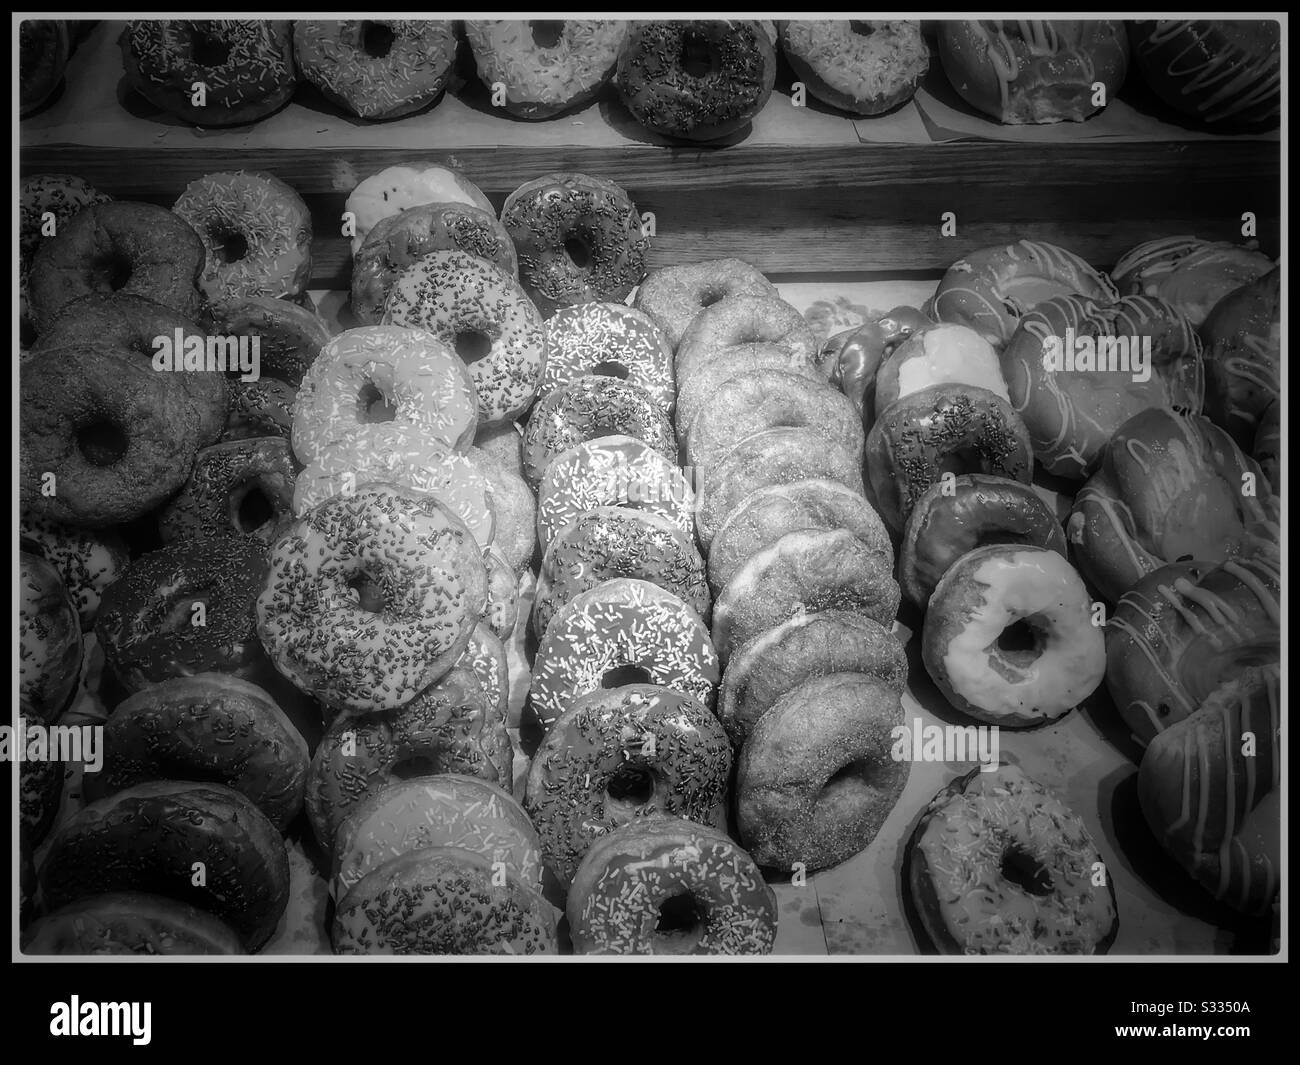 Ciambelle assortite al supermercato. Foto in bianco e nero. Foto Stock